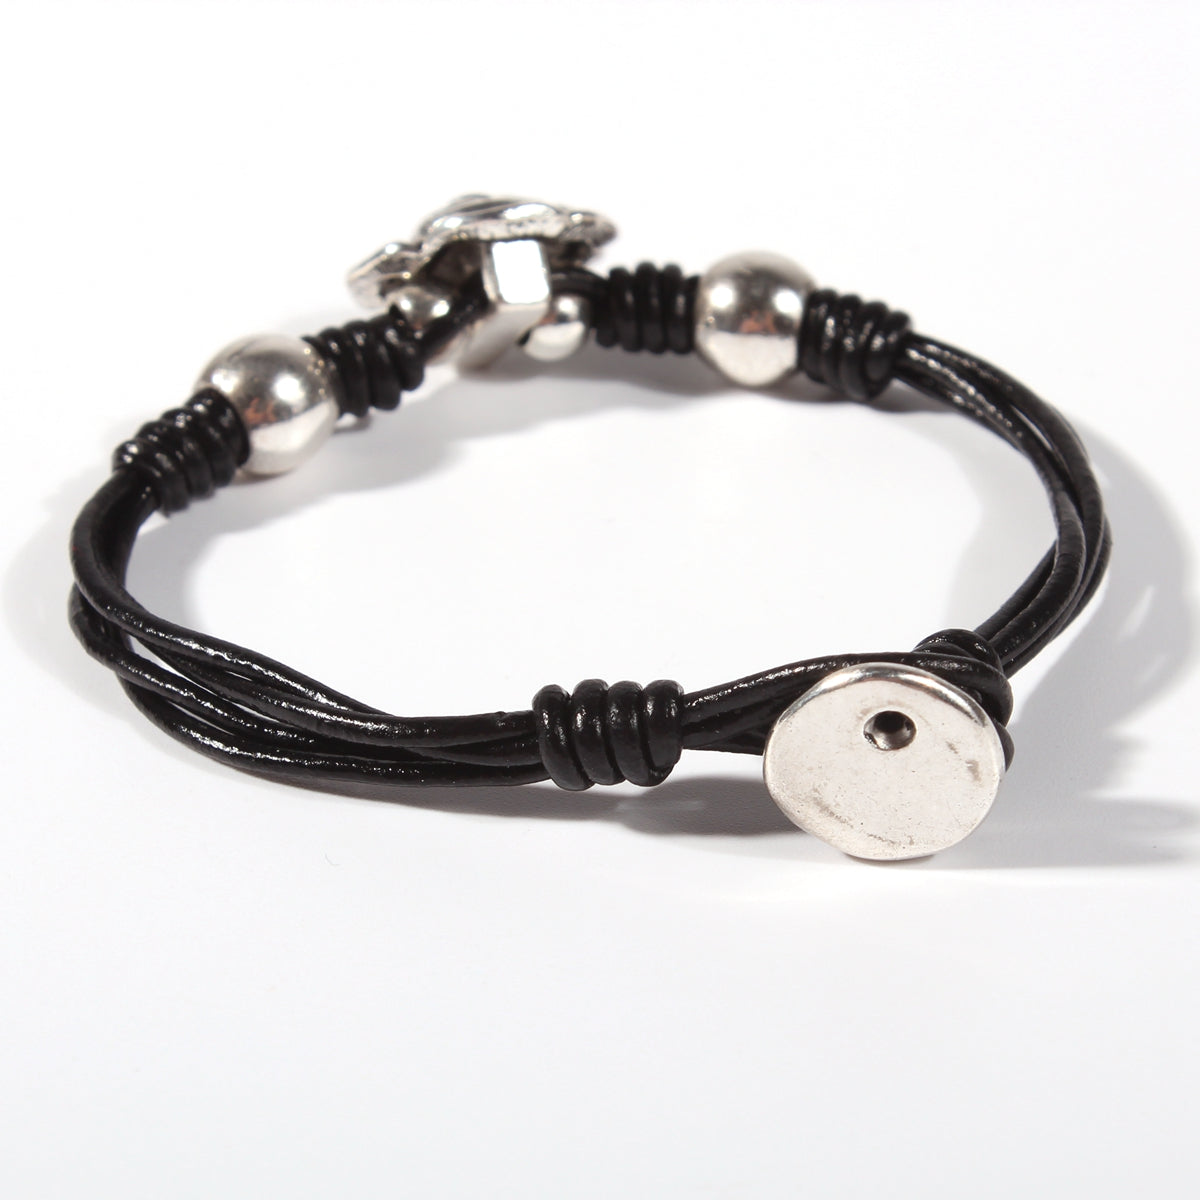 Genuine leather handmade women's bracelet MBR-09